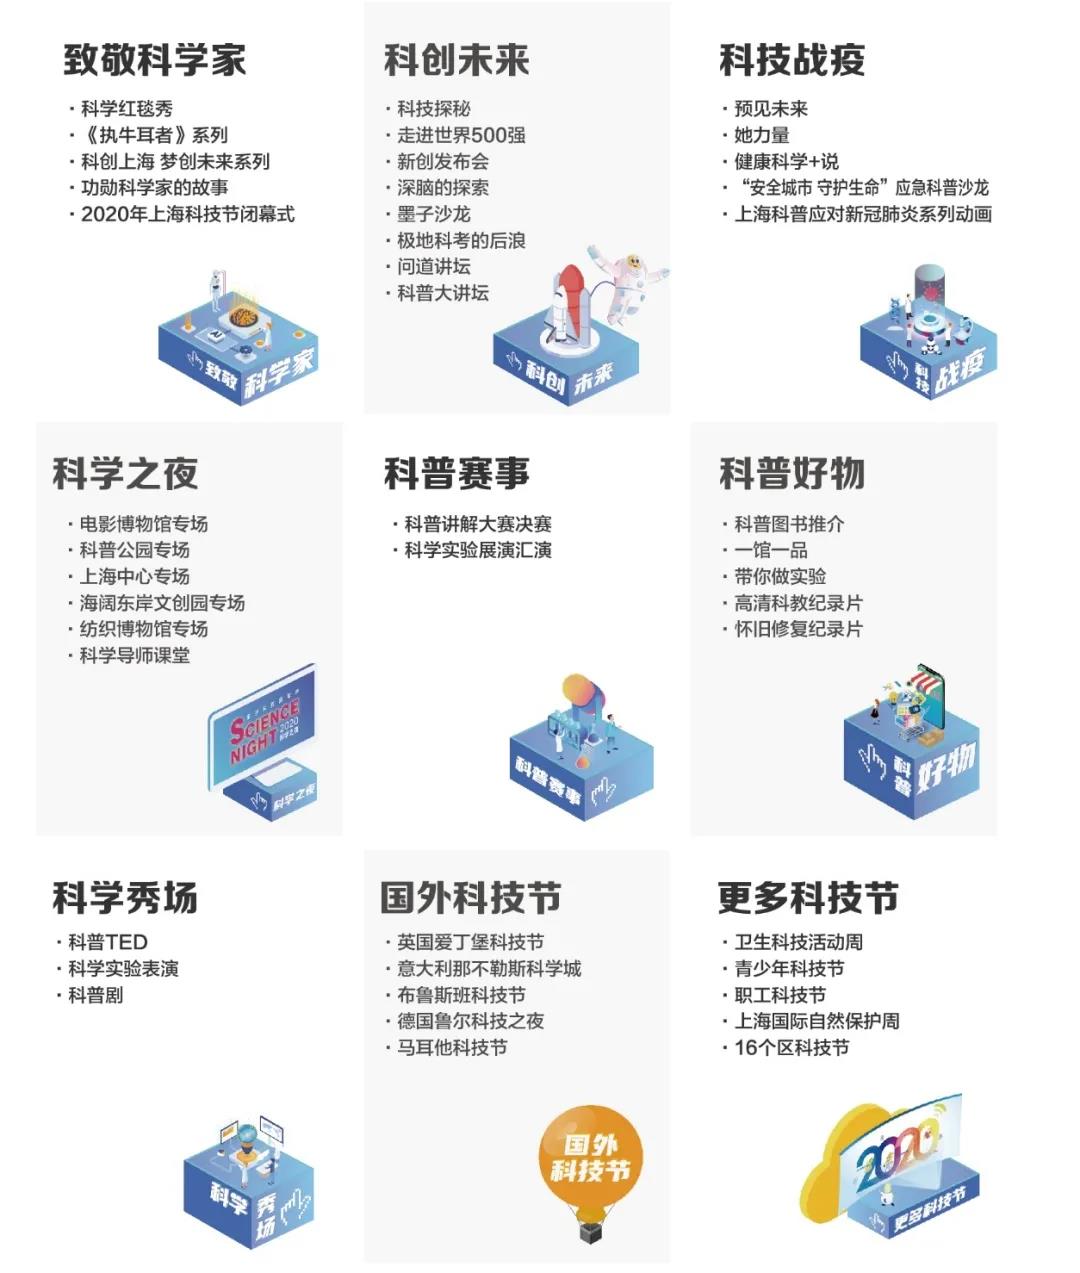 “云端”2020年上海科技节上线啦！今年怎么玩？一探究竟→3